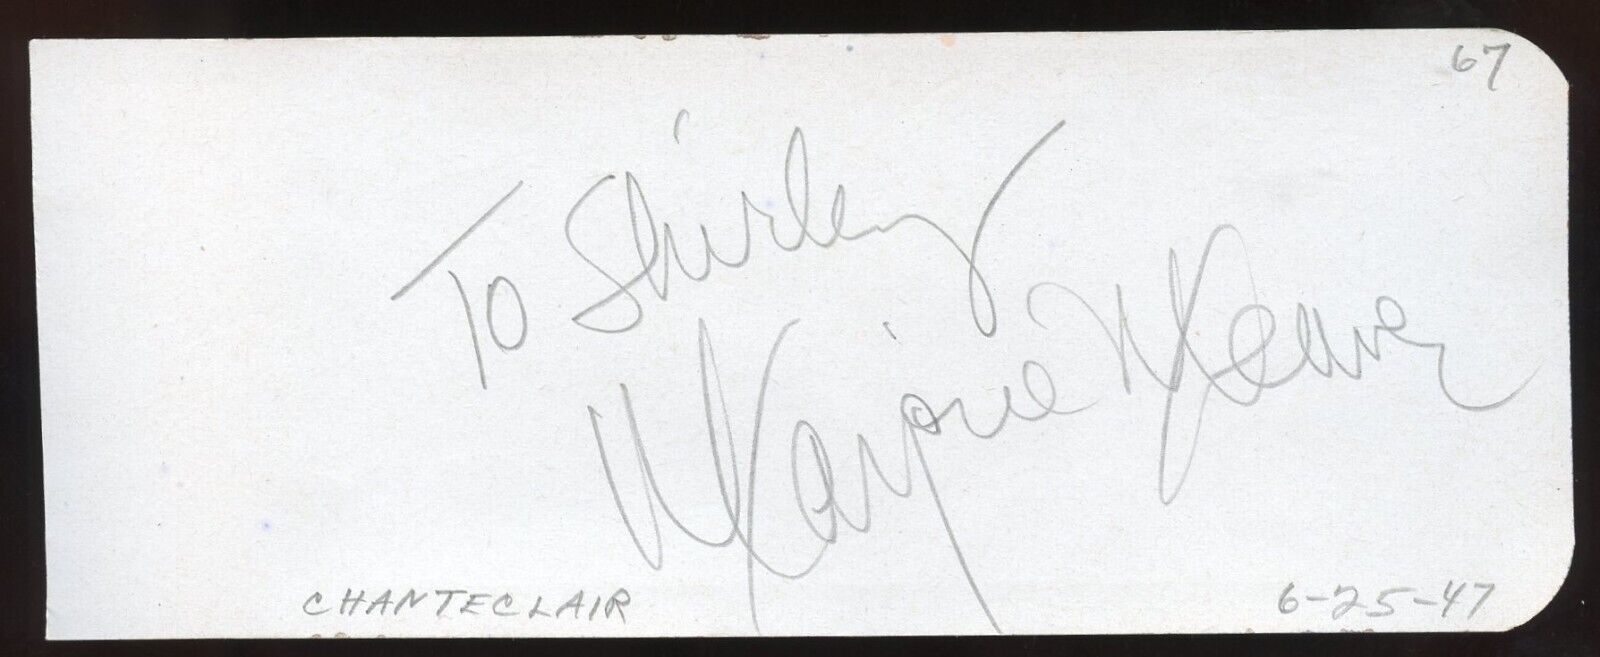 Marjorie Weaver d1994 signed 2x5 cut autograph on 6-25-47 Chanteclair Restaurant